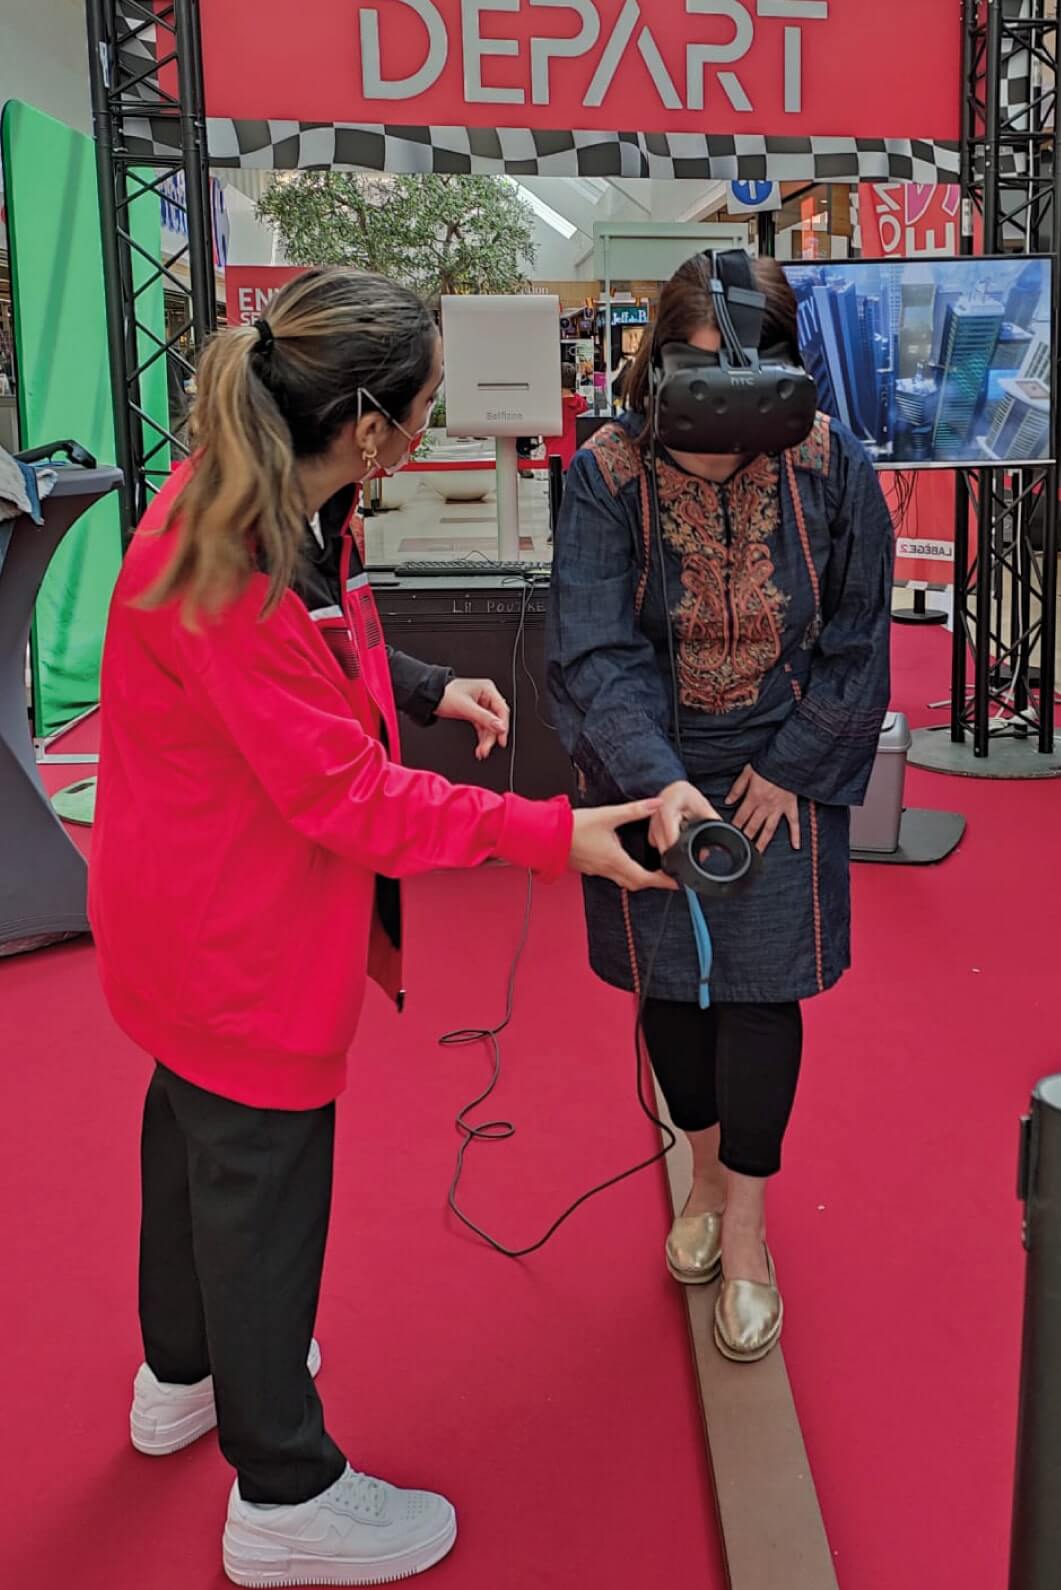 Animation de la poutre avec casque virtuel - Fou de courses l'événement à sensations